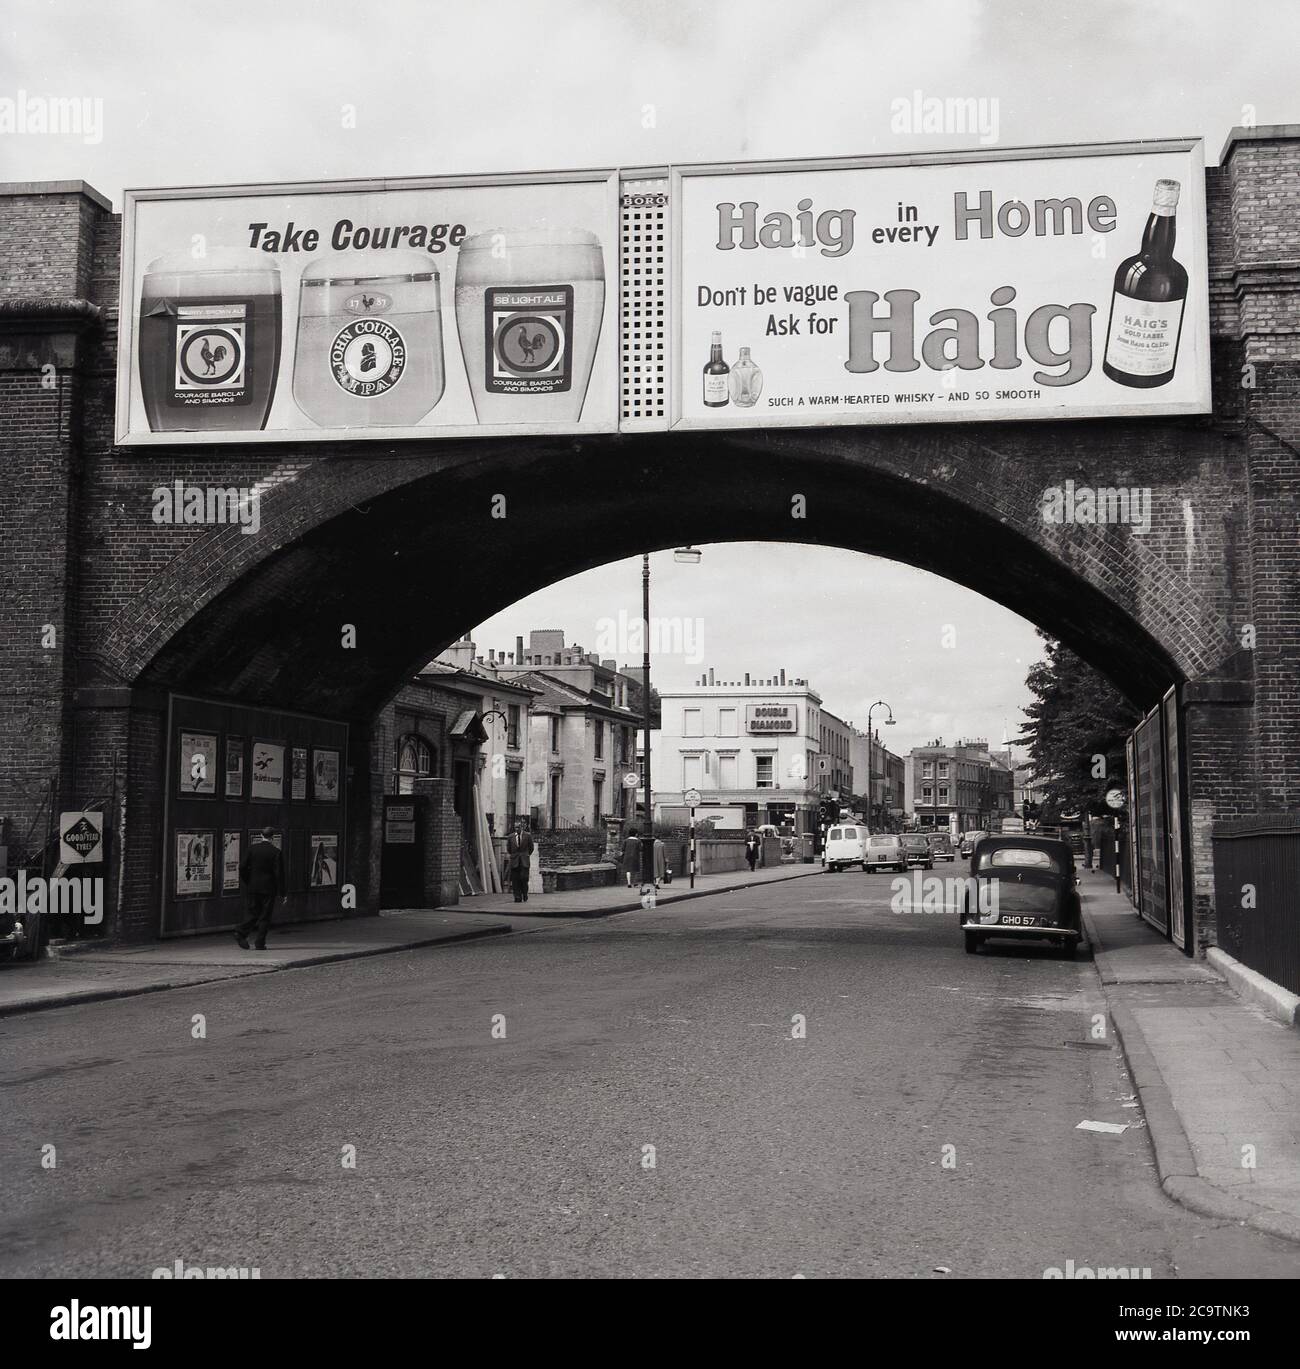 Années 1960, historique, Panneaux publicitaires ou affiches pour les marques de boissons connues de l'époque, courage Beer et Haigh Whisky sur un pont ferroviaire à la ville de Kentish, Londres, Angleterre, Royaume-Uni. Le Moretown Arms, un pub Ind Cooper vendant le Double Diamond, est visible au loin. Banque D'Images